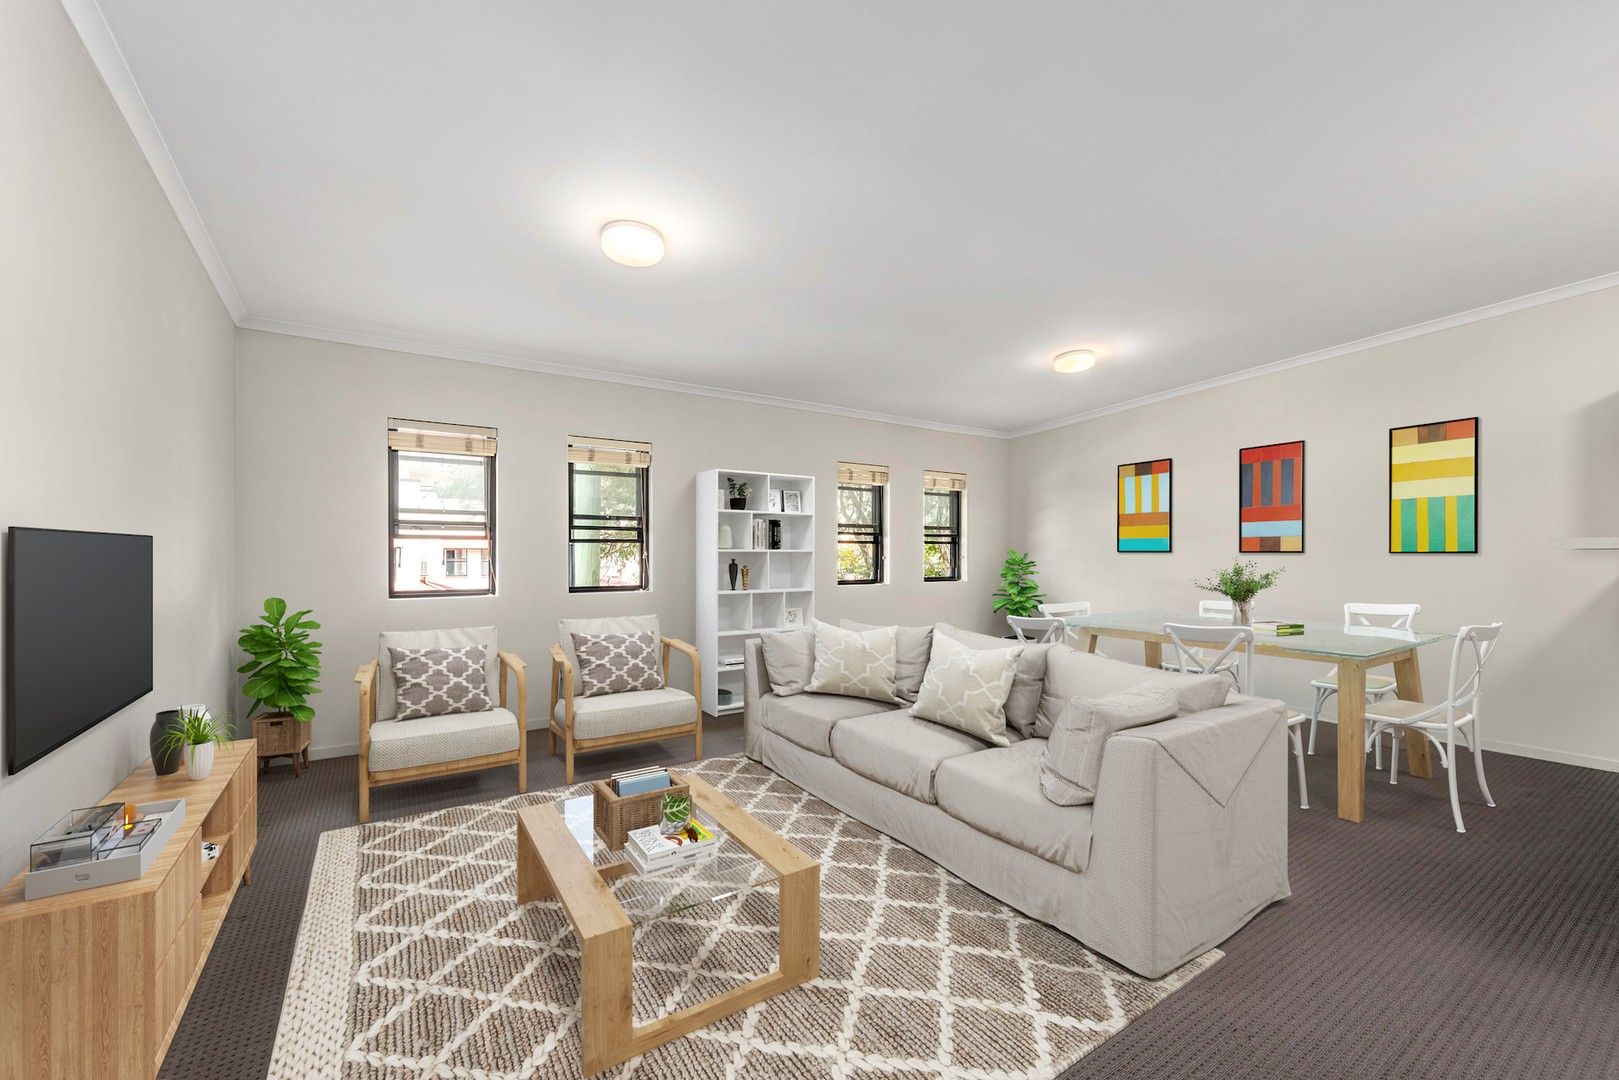 2 bedrooms Apartment / Unit / Flat in 8/706 Brunswick Street NEW FARM QLD, 4005